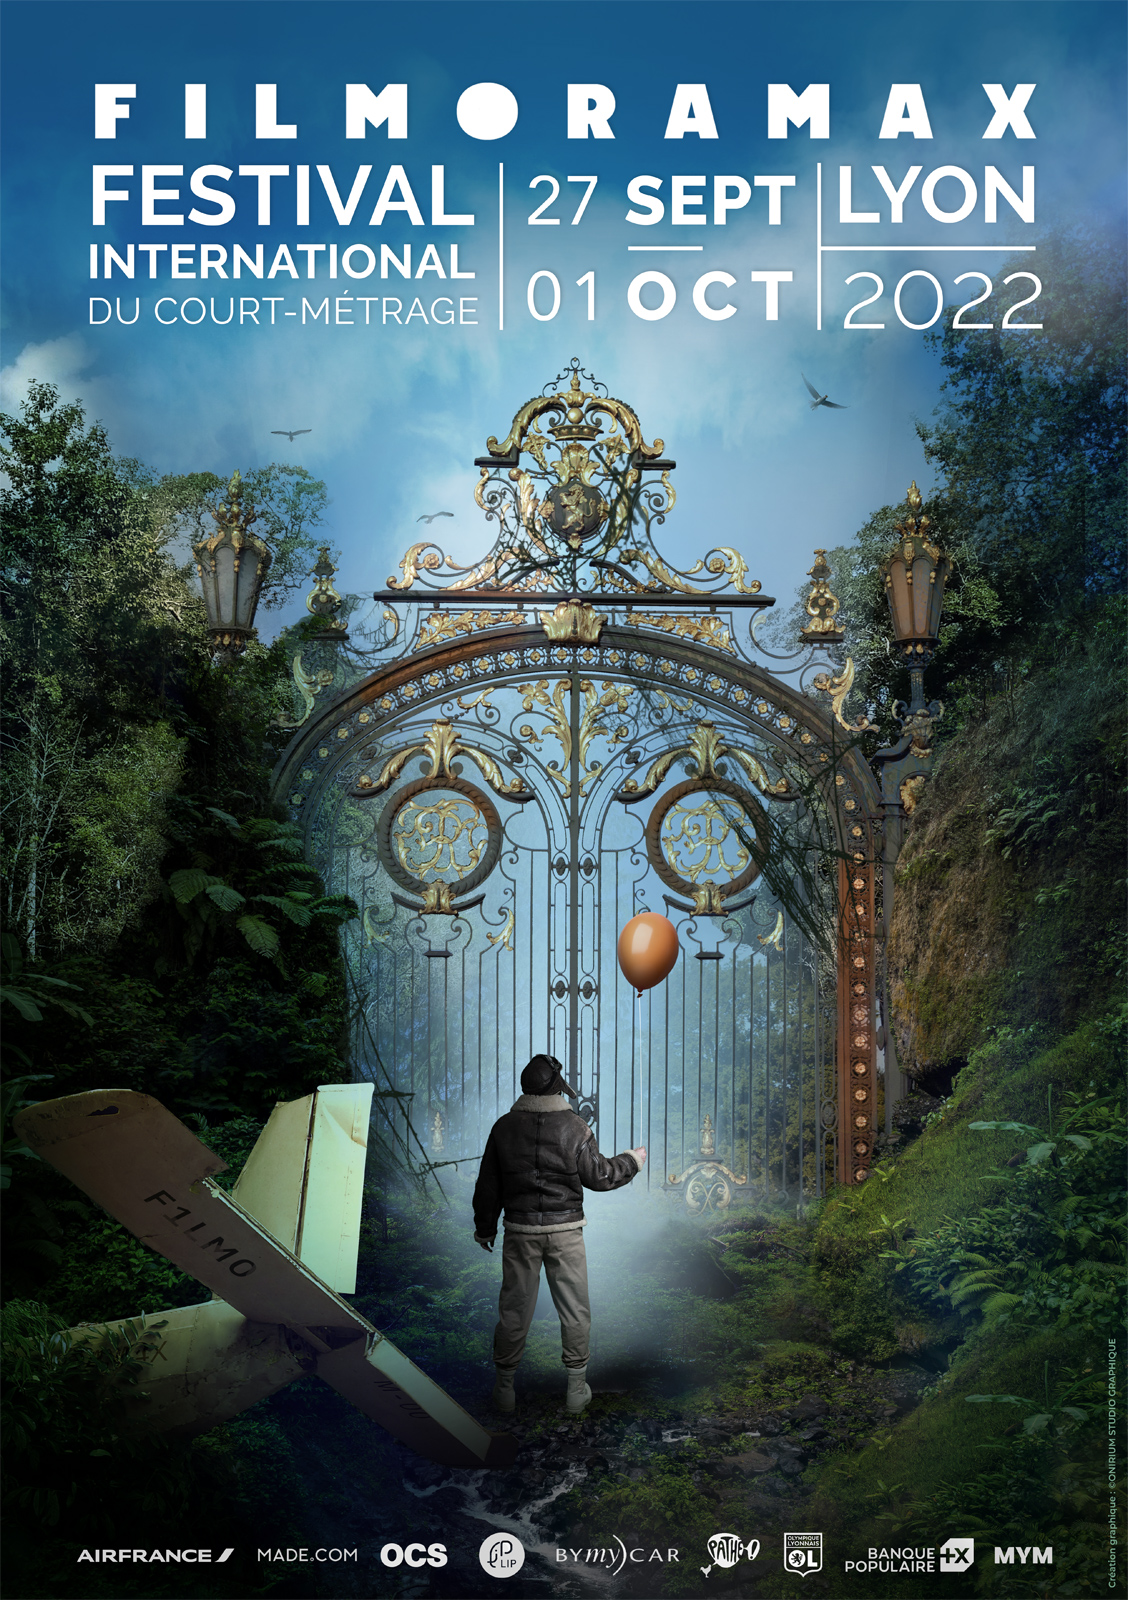 Filmoramax 2022 - Festival International du court-métrage à Lyon du 27 septembre au 1er octobre